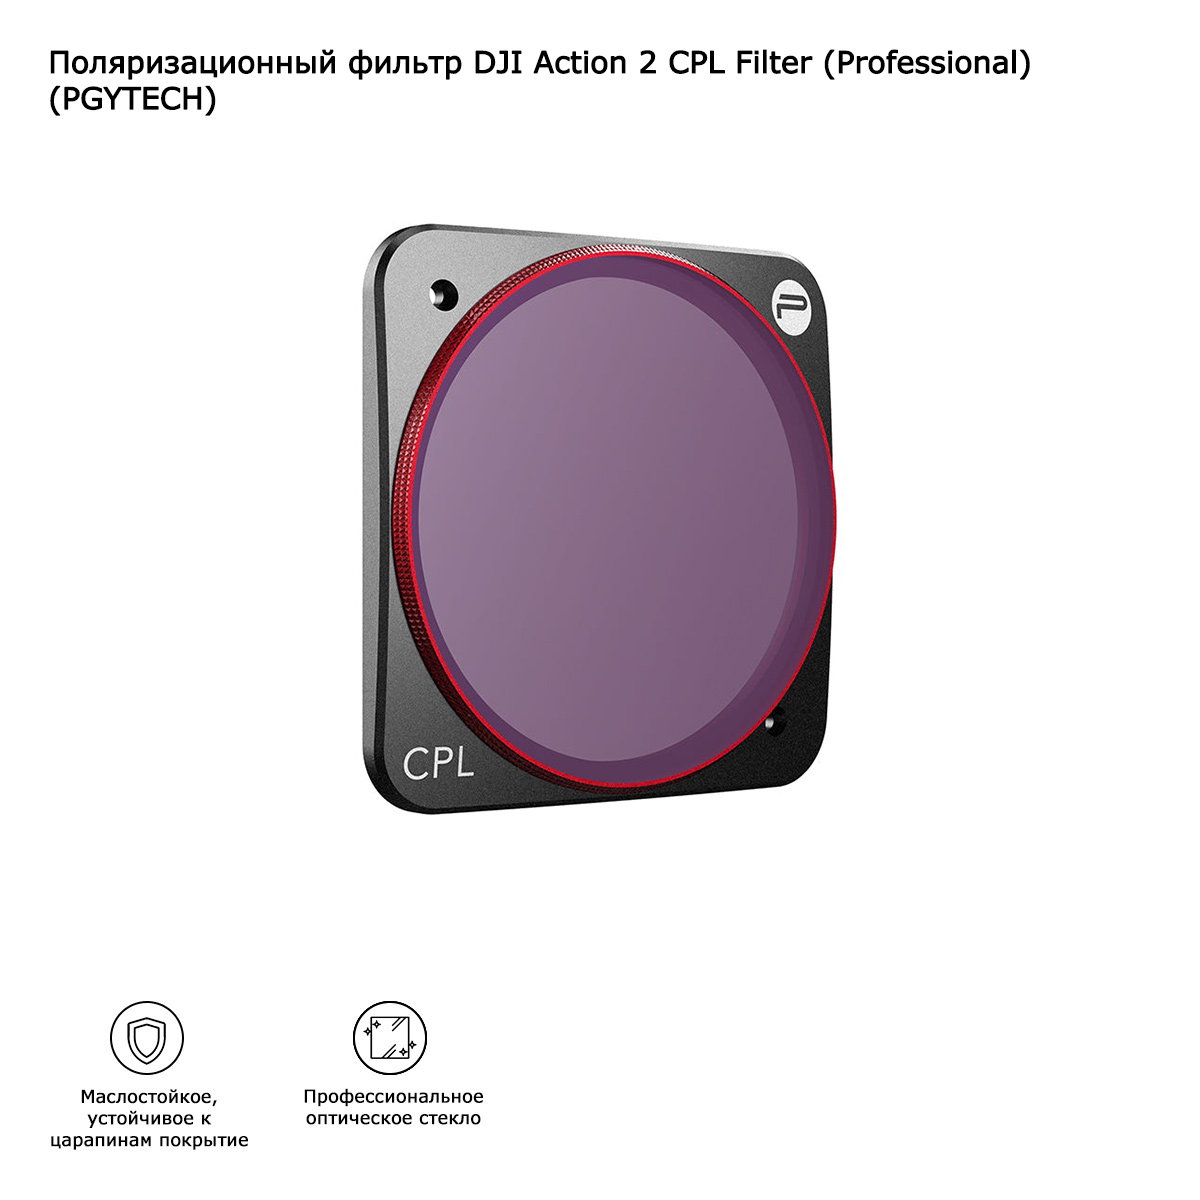 Поляризационный фильтр DJI Action 2 CPL Filter (Professional) (PGYTECH) (P-28A-011)